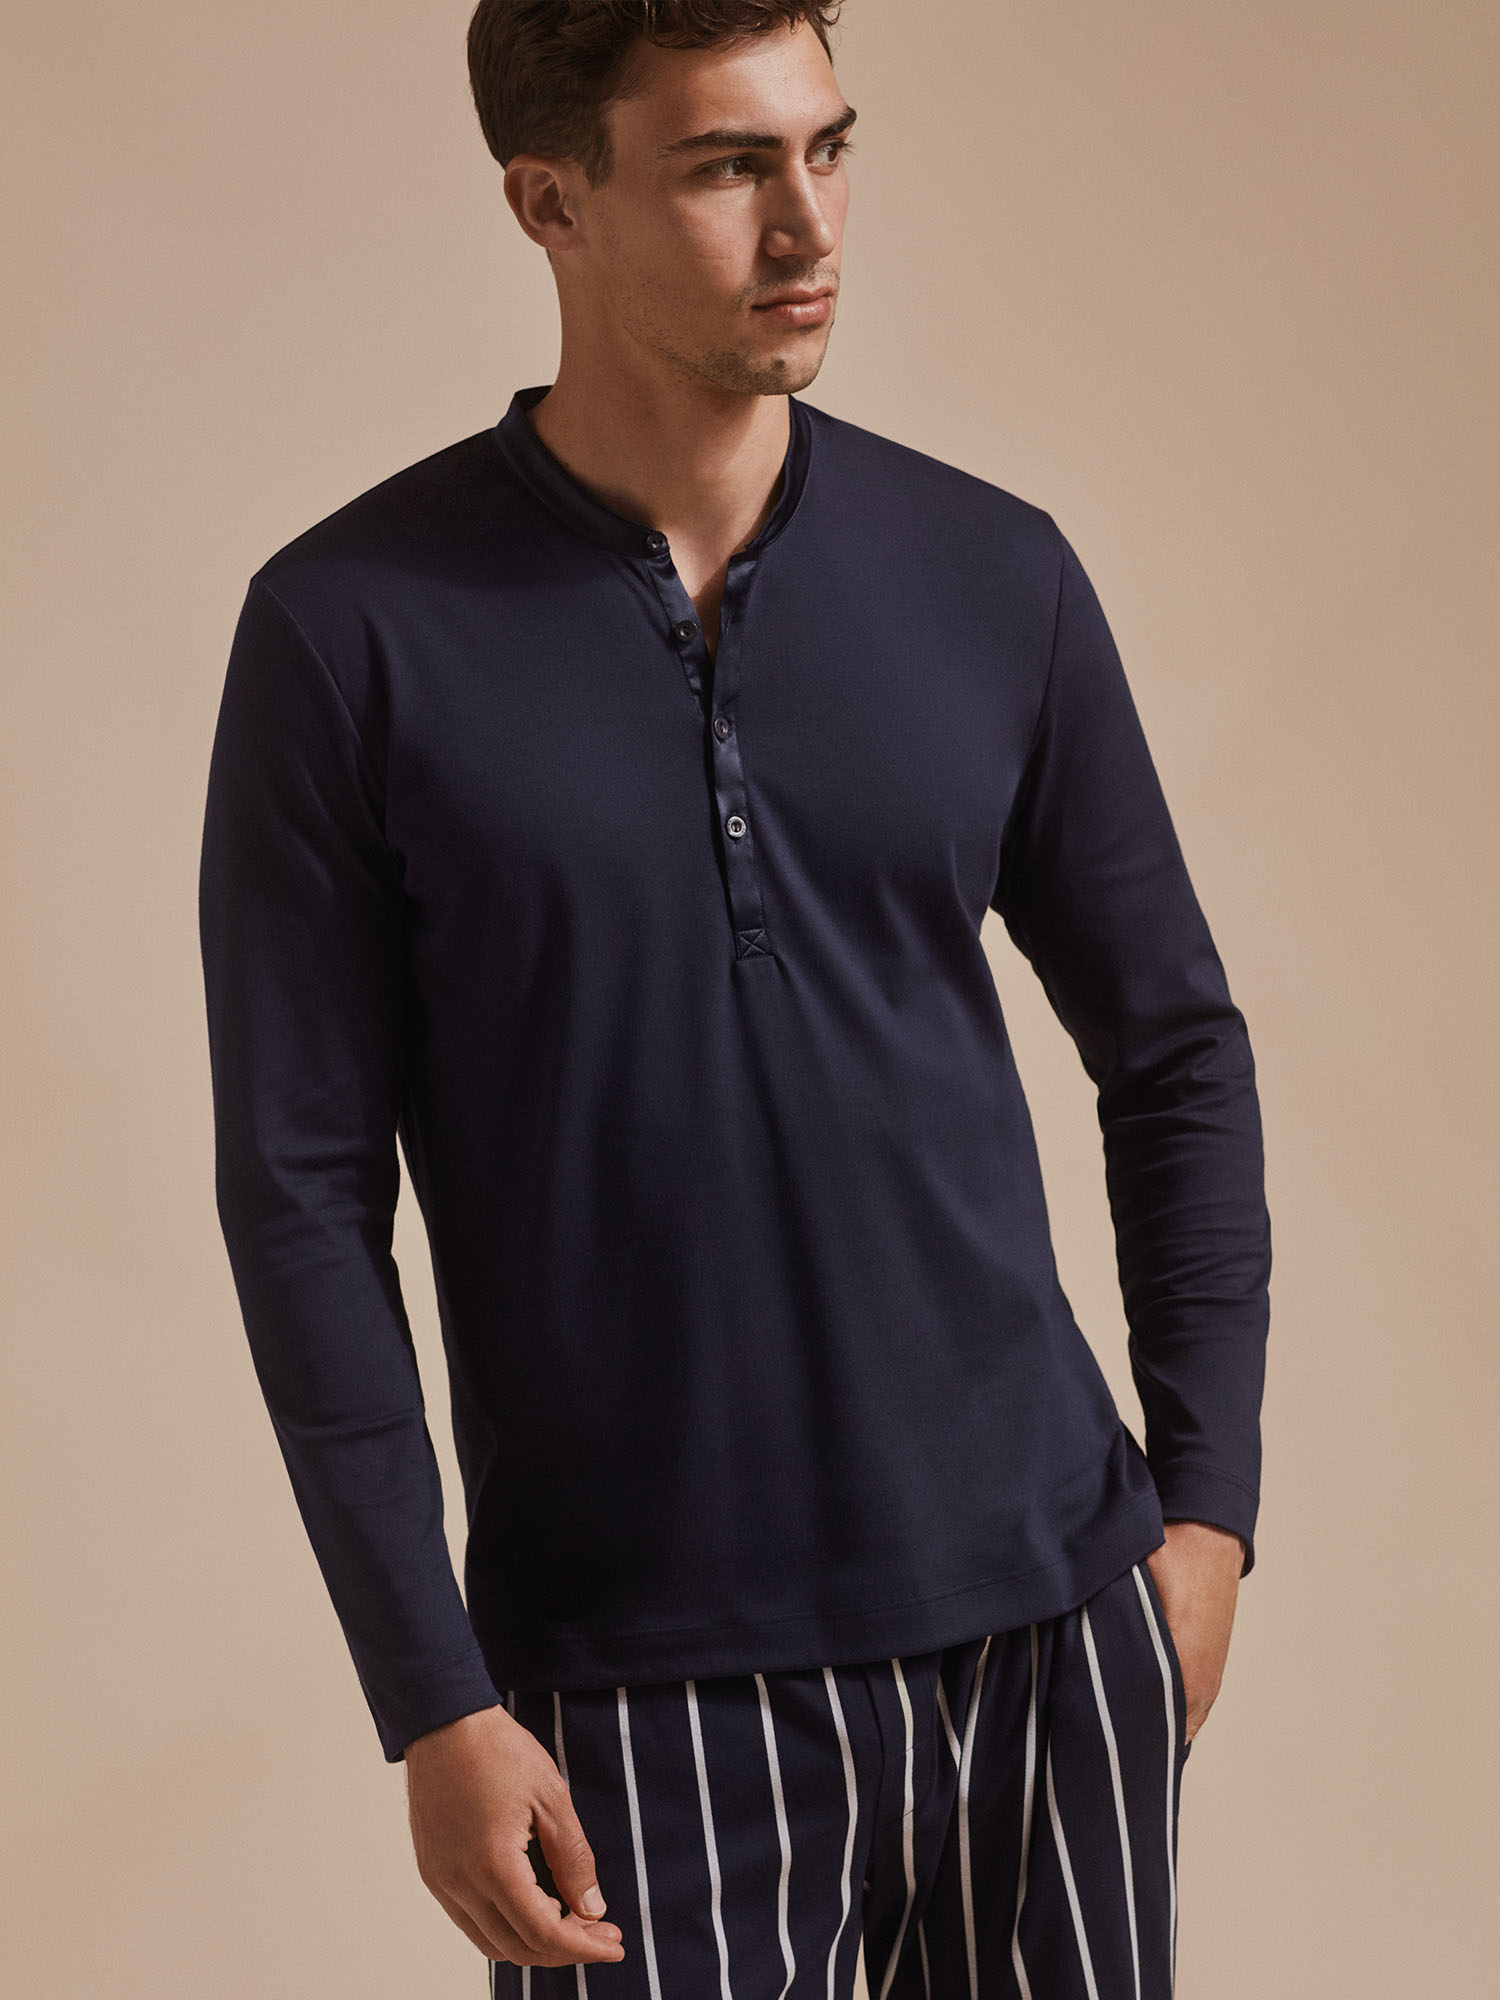 Männermodel steht in Henley-Langarm Pyjama-Shirt und gestreifter Hose | mey®